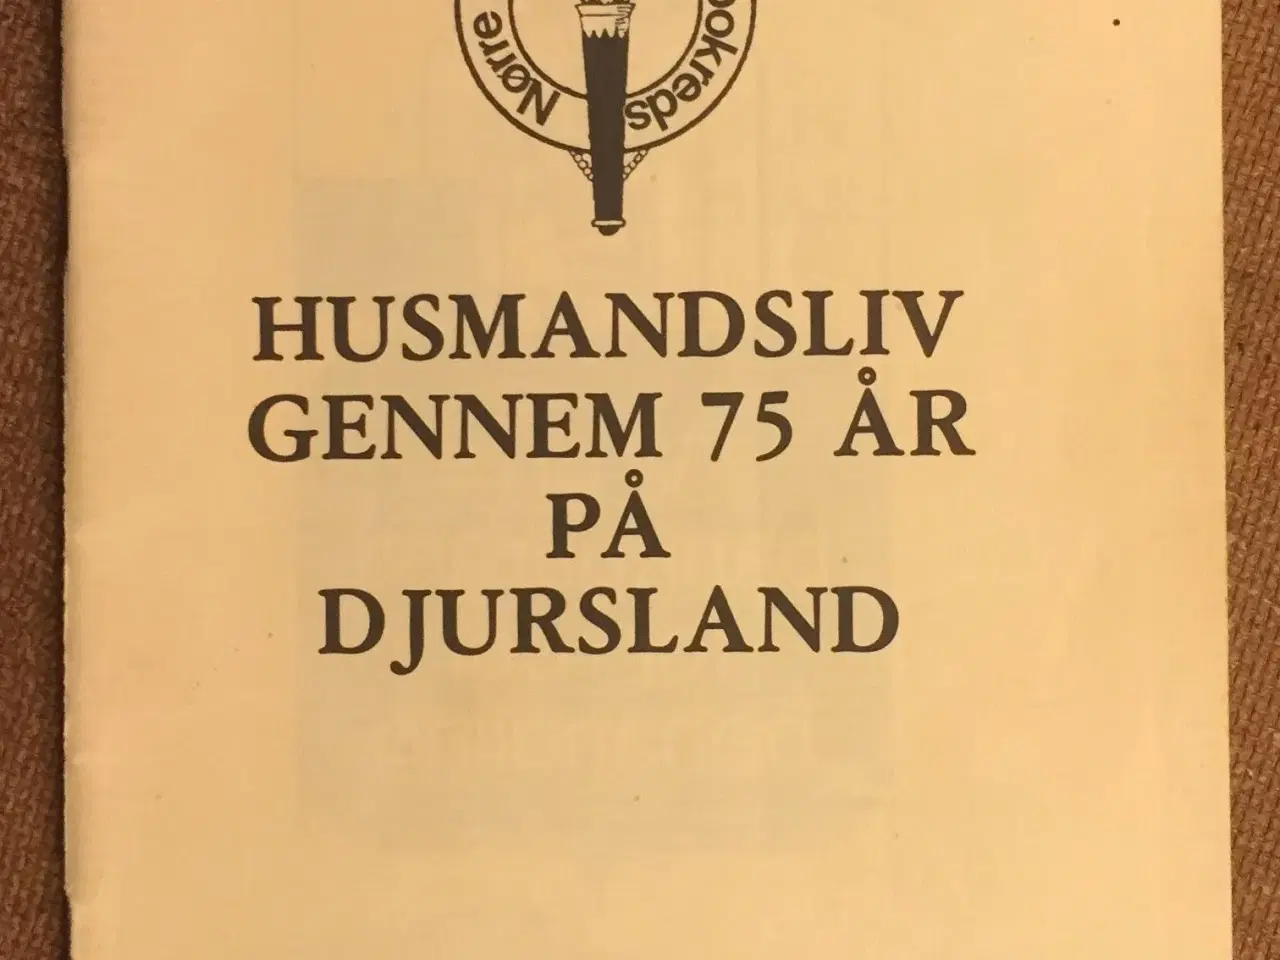 Billede 1 - Husmandsliv gennem 75 år på Djursland.